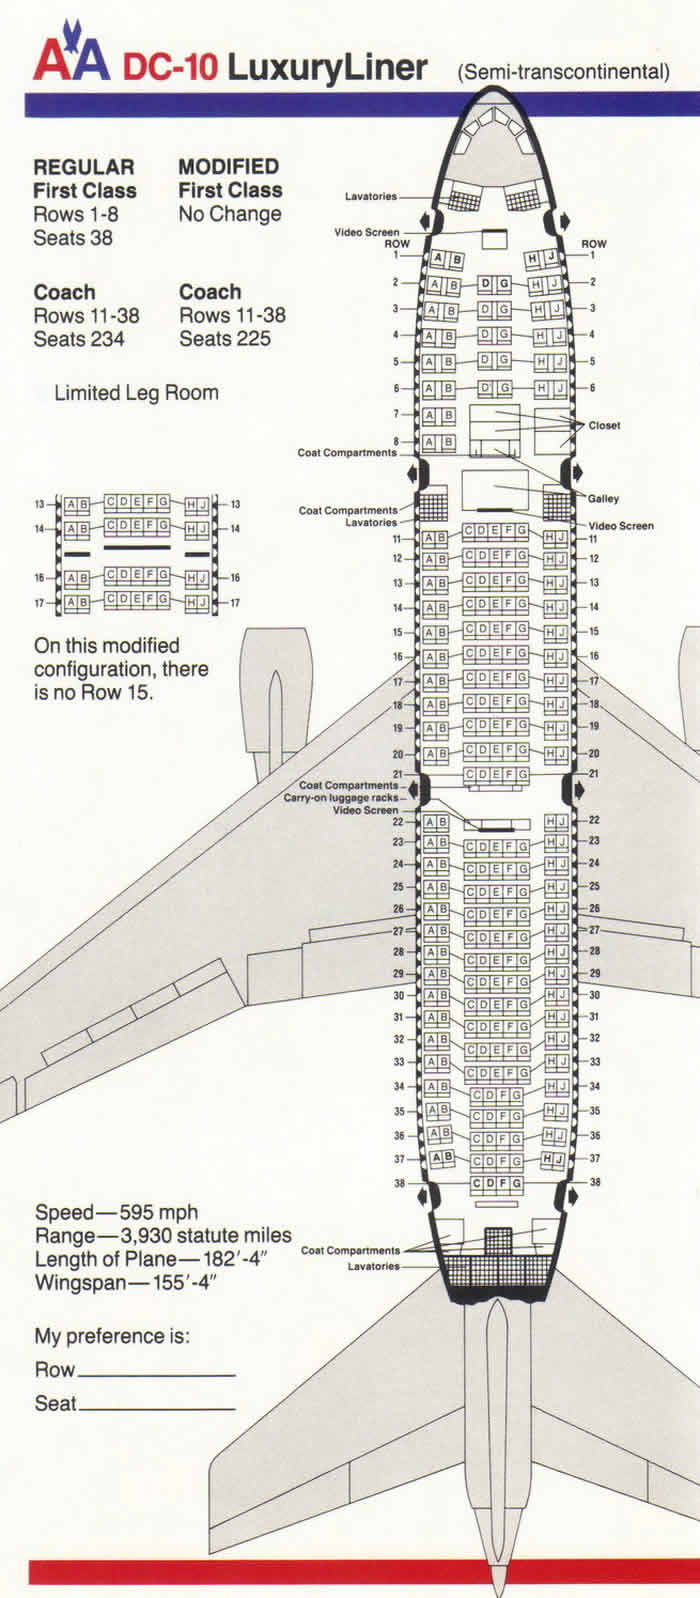 AA DC-10 SEMI-TRANSCONTINENTAL